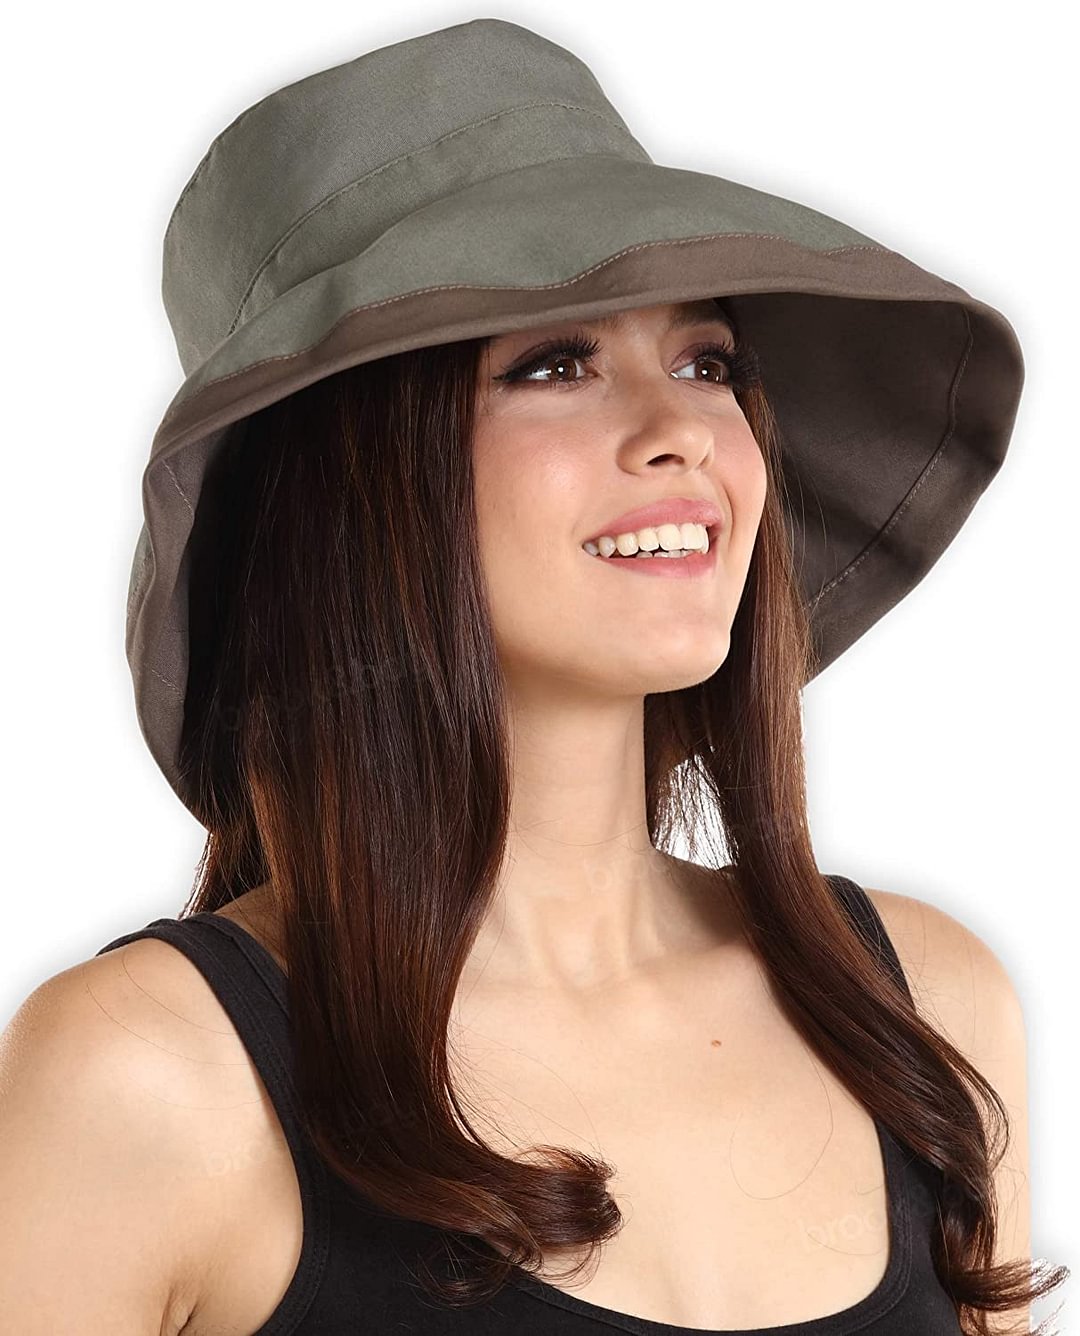 Sun Hat for Women - UV Protection Hiking & Gardening/Garden Hat - Wide Brim Summer Cap